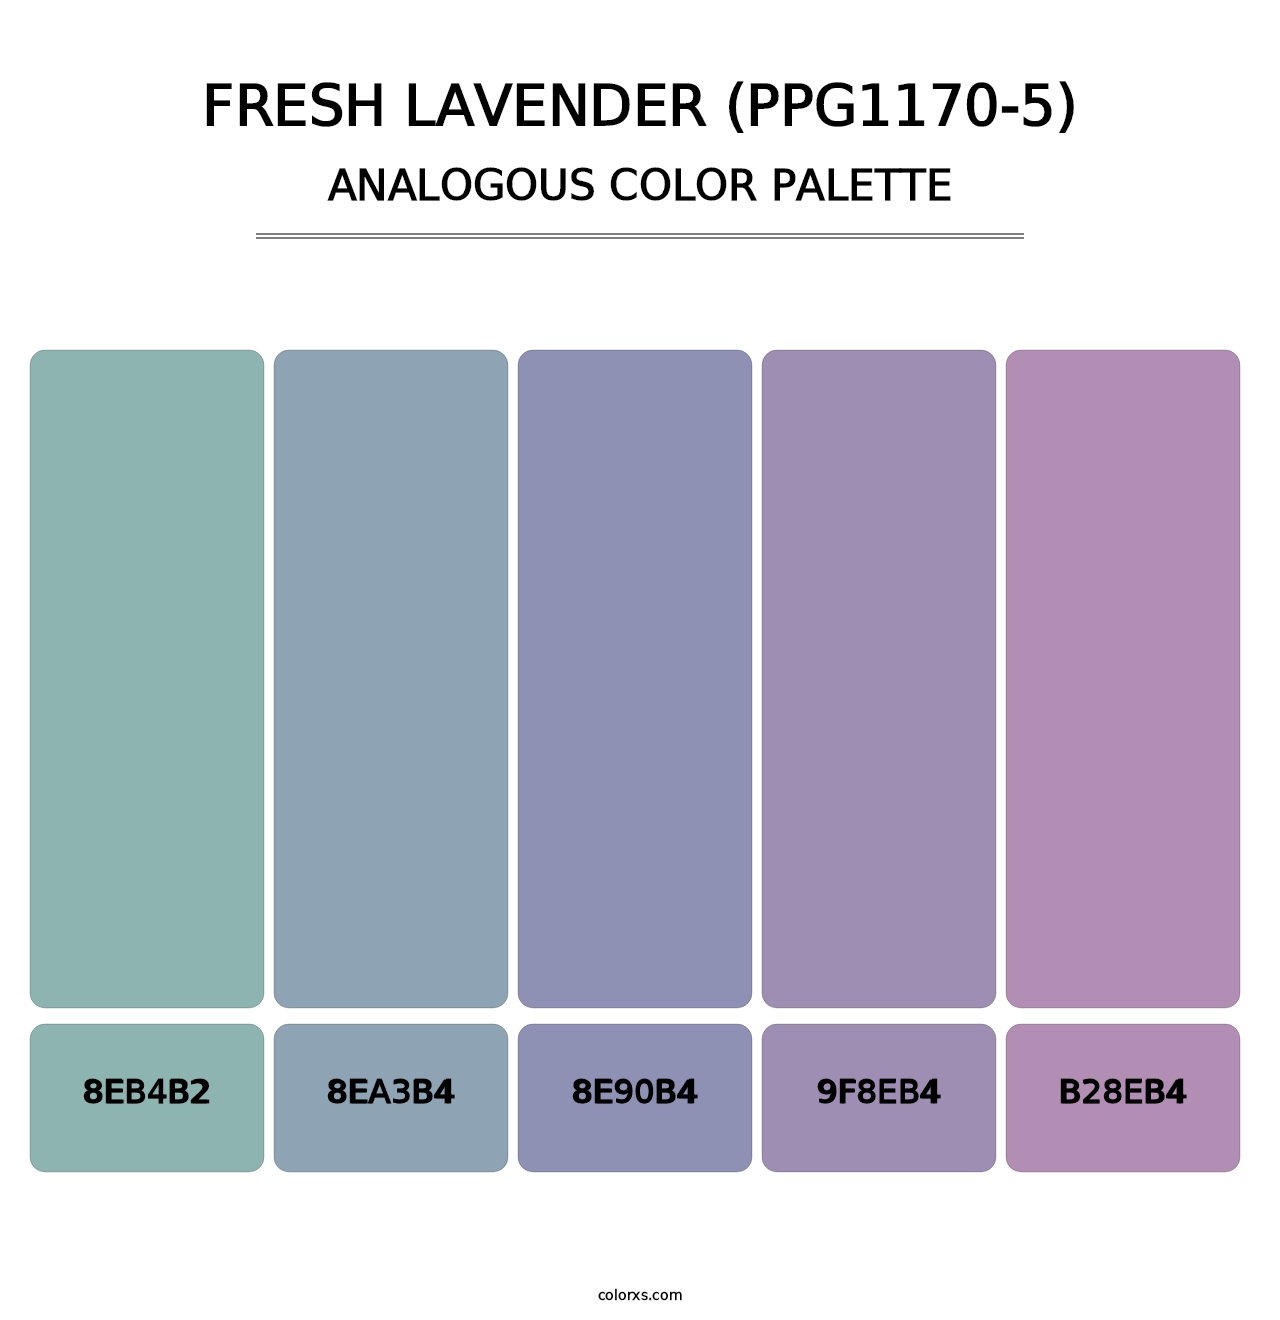 Fresh Lavender (PPG1170-5) - Analogous Color Palette